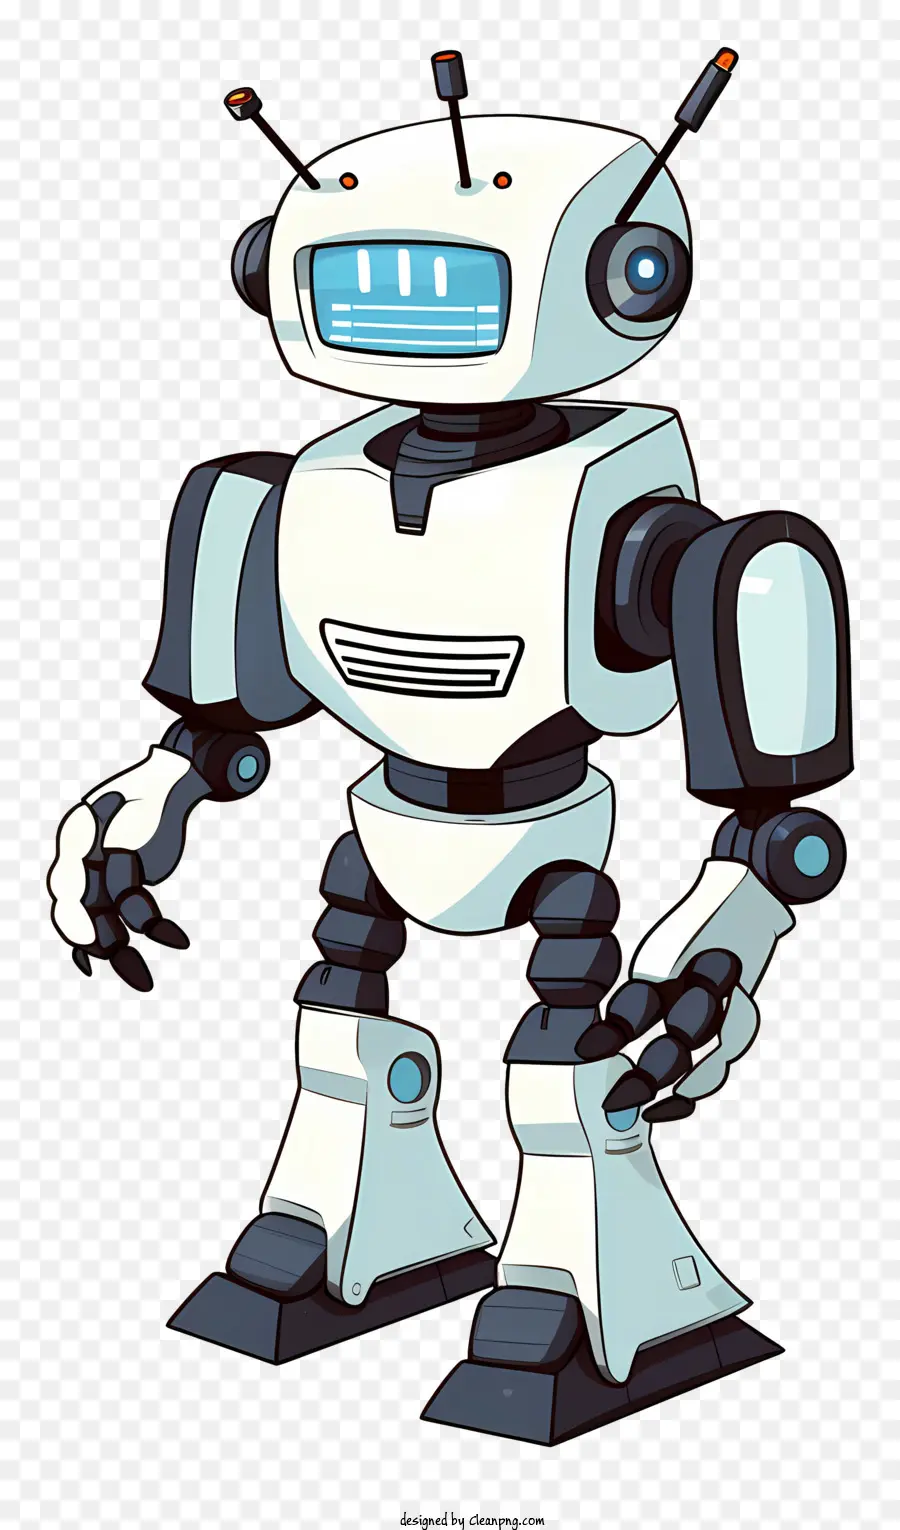 Cartoon -Robotercharakter weiß und schwarzer Roboter -Design -Roboter mit großen Augenroboter mit kleinem Mund Roboter Charakter - Cartoon -Robotercharakter mit Schwarz -Weiß -Outfit